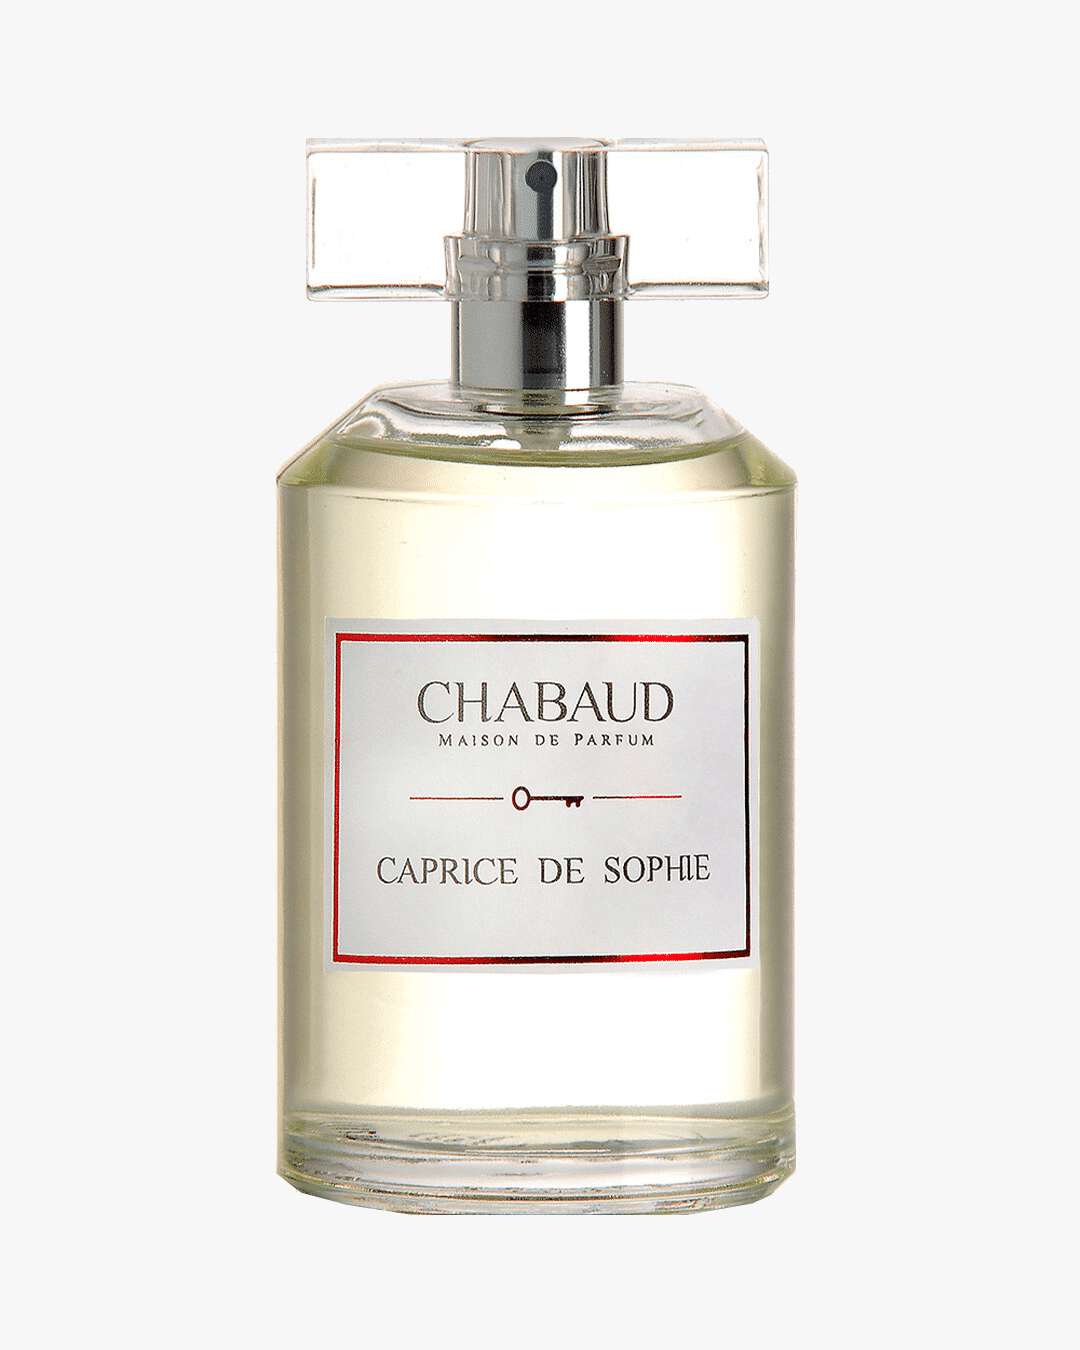 Chabaud Maison de Parfum Caprice de Sophie EdP - Fredrik & Louisa